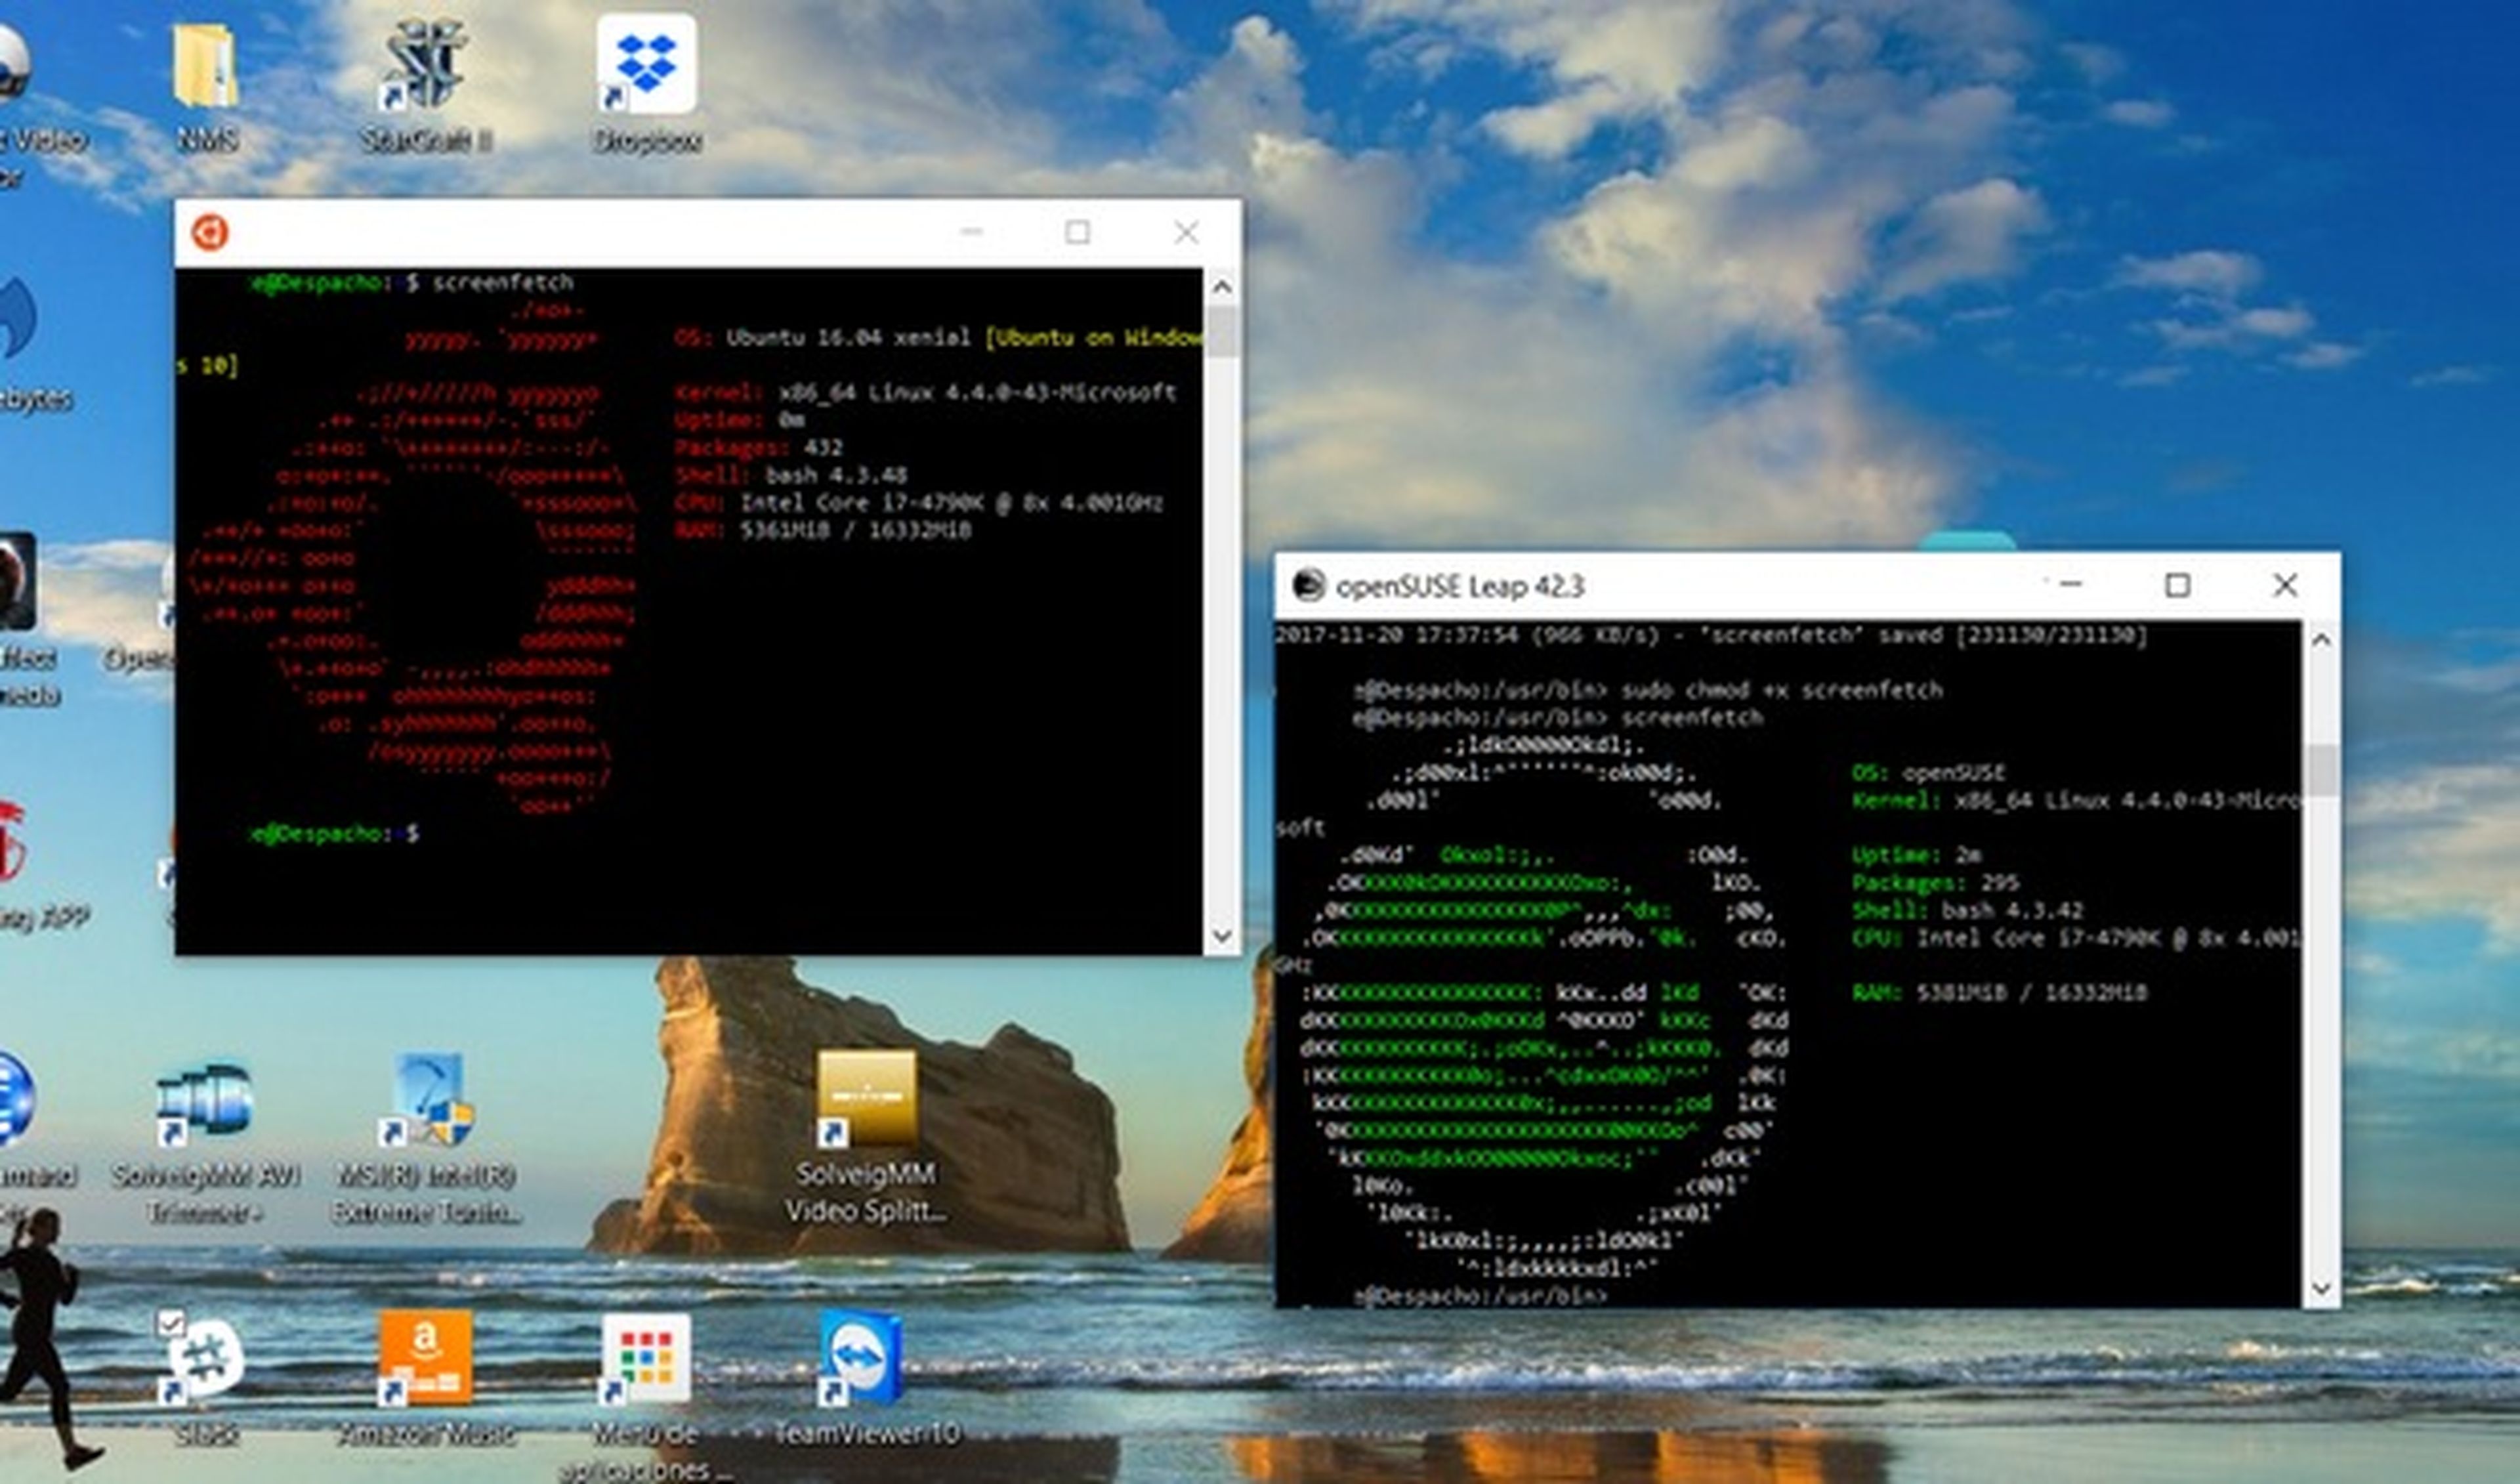 Cómo instalar distros Linux como un programa de Windows 10